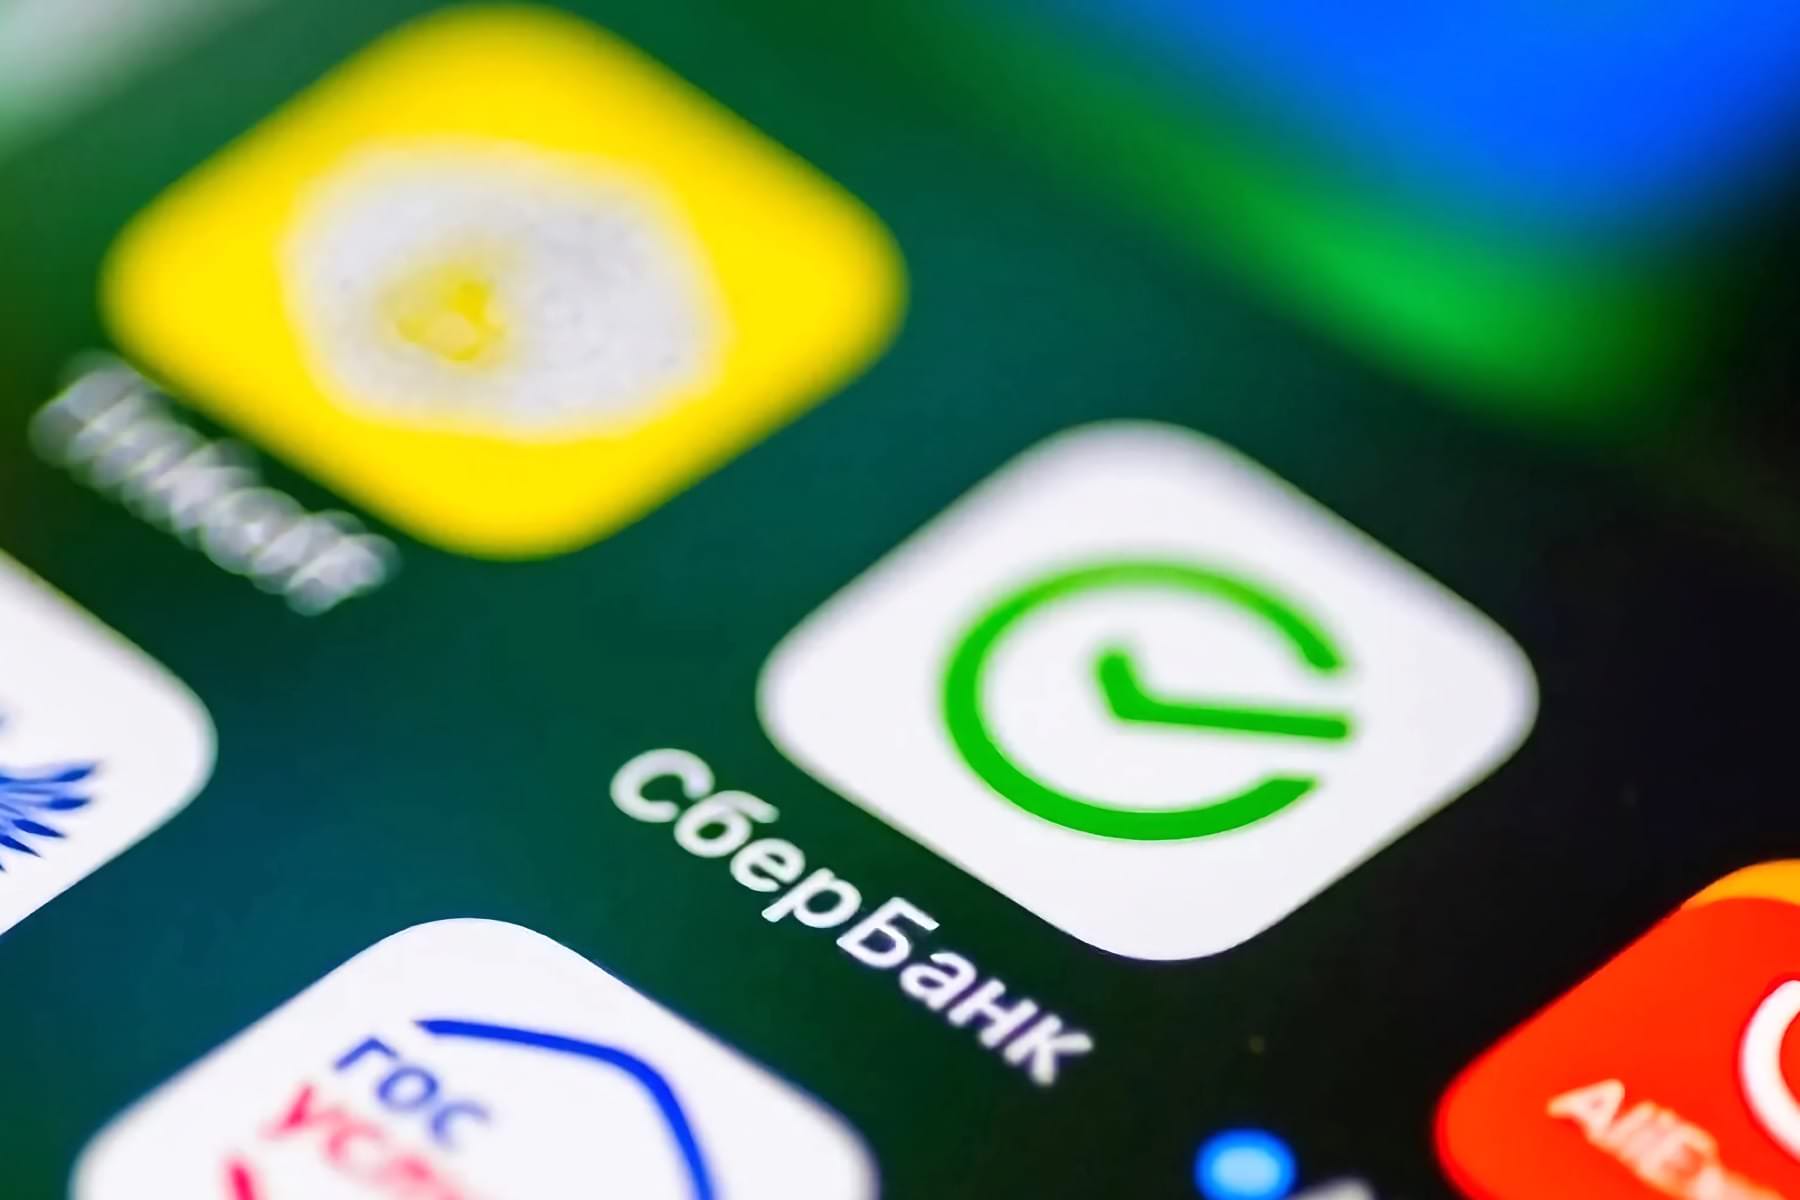 «Сбербанк» выпустил новый «Сбербанк Онлайн» для iPhone. Его могут установить все бесплатно